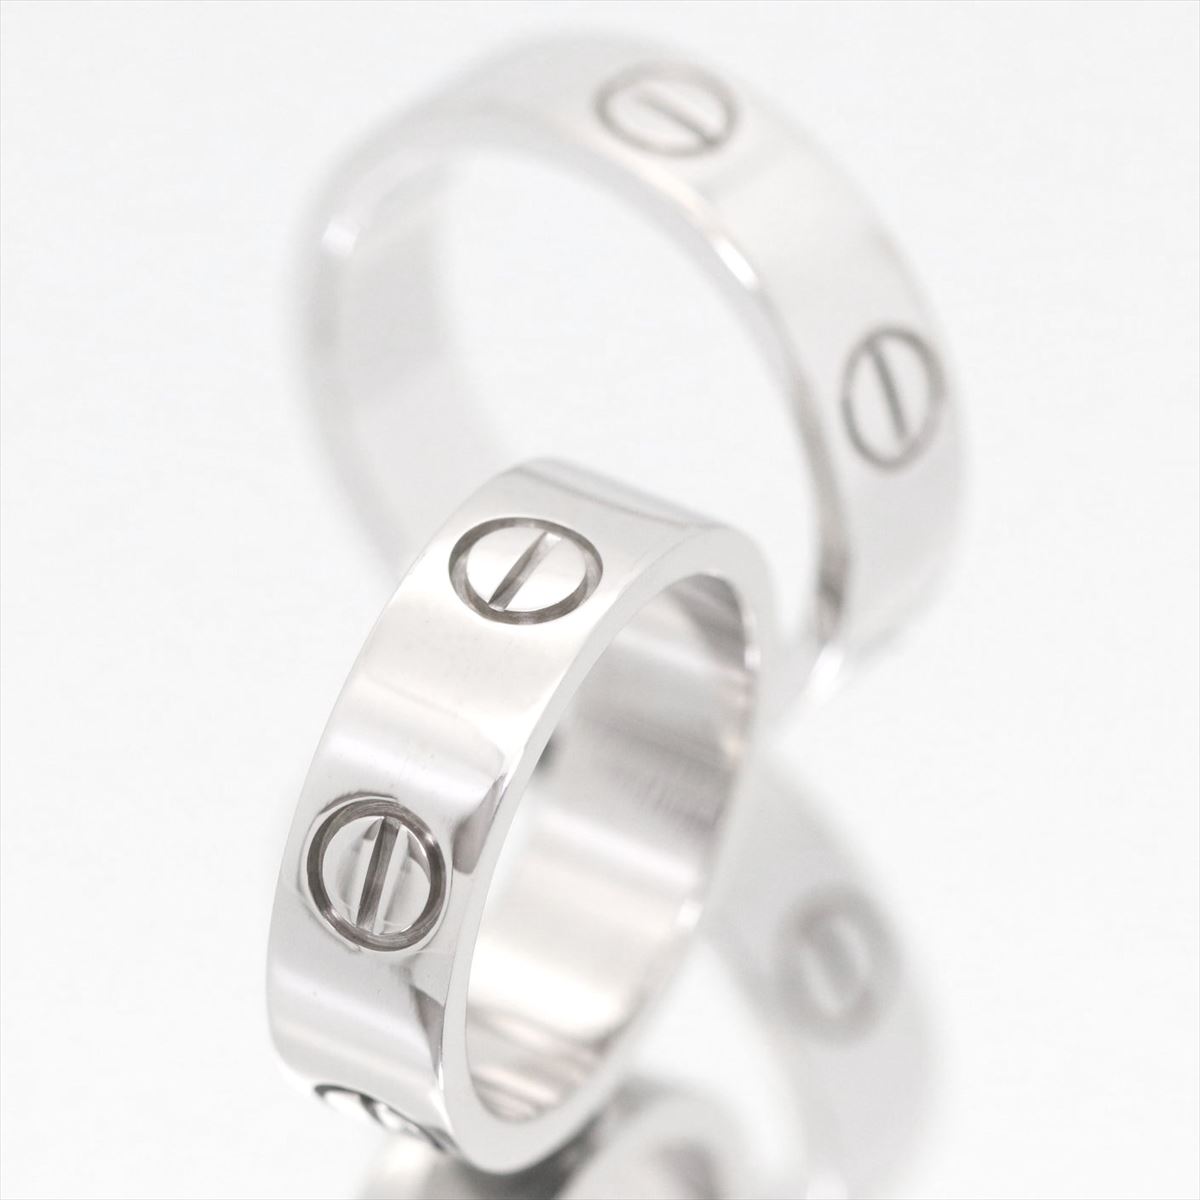 【ギフト品質】【名入れ】【セット販売】【4号〜24号】/Cartier / カルティエ ペアリング / ラブリング LOVEring ホワイトゴールド K18 750 WG 2点 B4084752 / メンズ レディース マリッジリング 結婚指輪